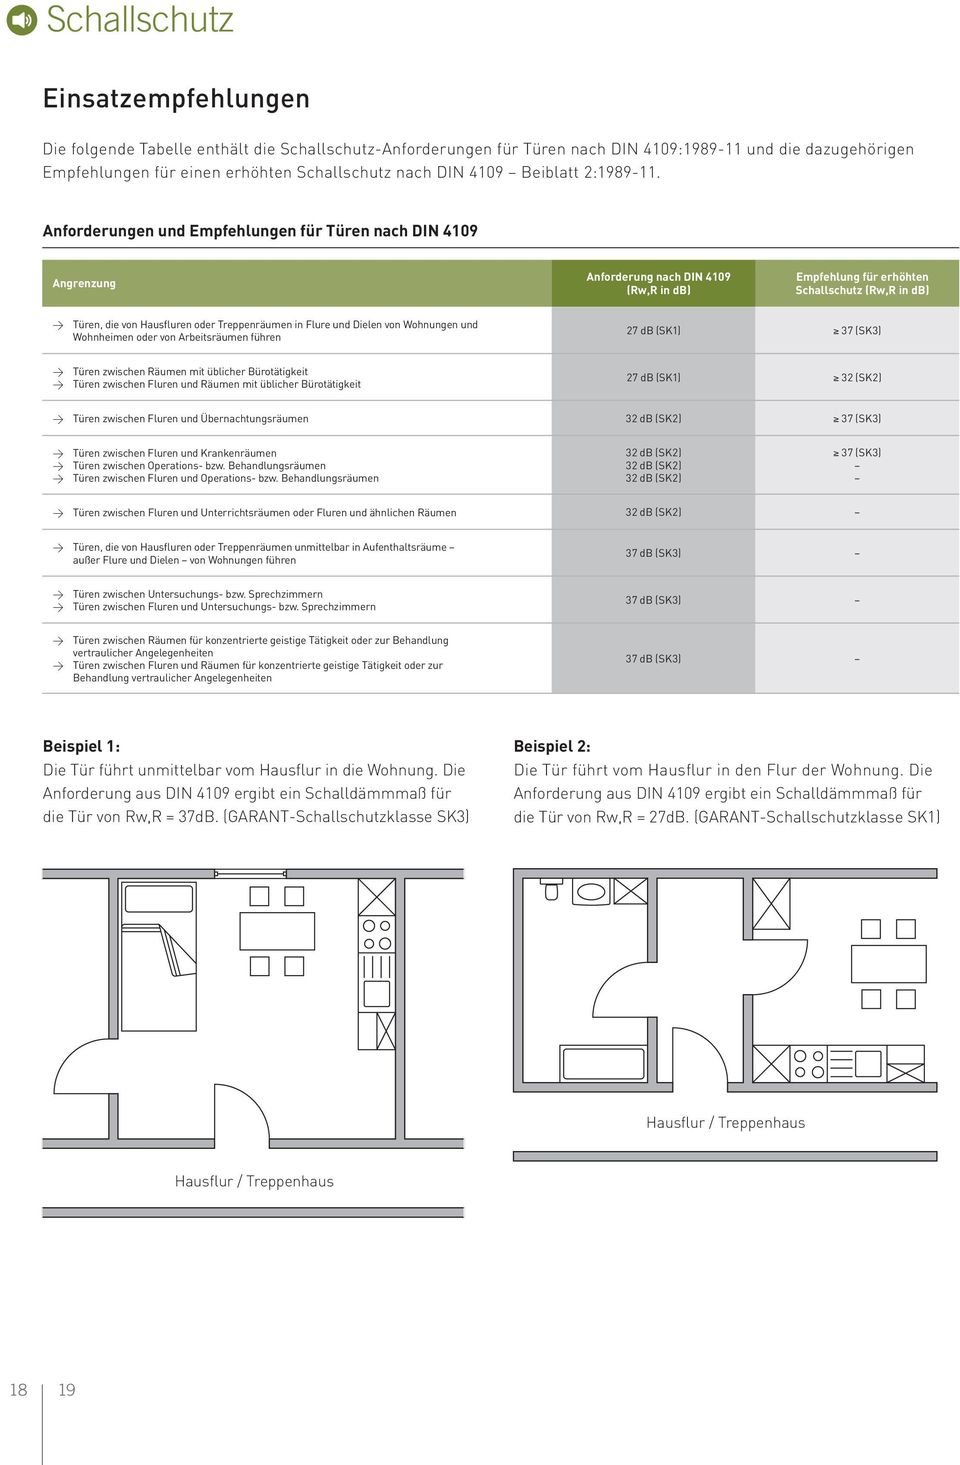 Anforderungen und Empfehlungen für Türen nach DIN 4109 Angrenzung Anforderung nach DIN 4109 (Rw,R in db) Empfehlung für erhöhten Schallschutz (Rw,R in db) w Türen, die von Hausfluren oder